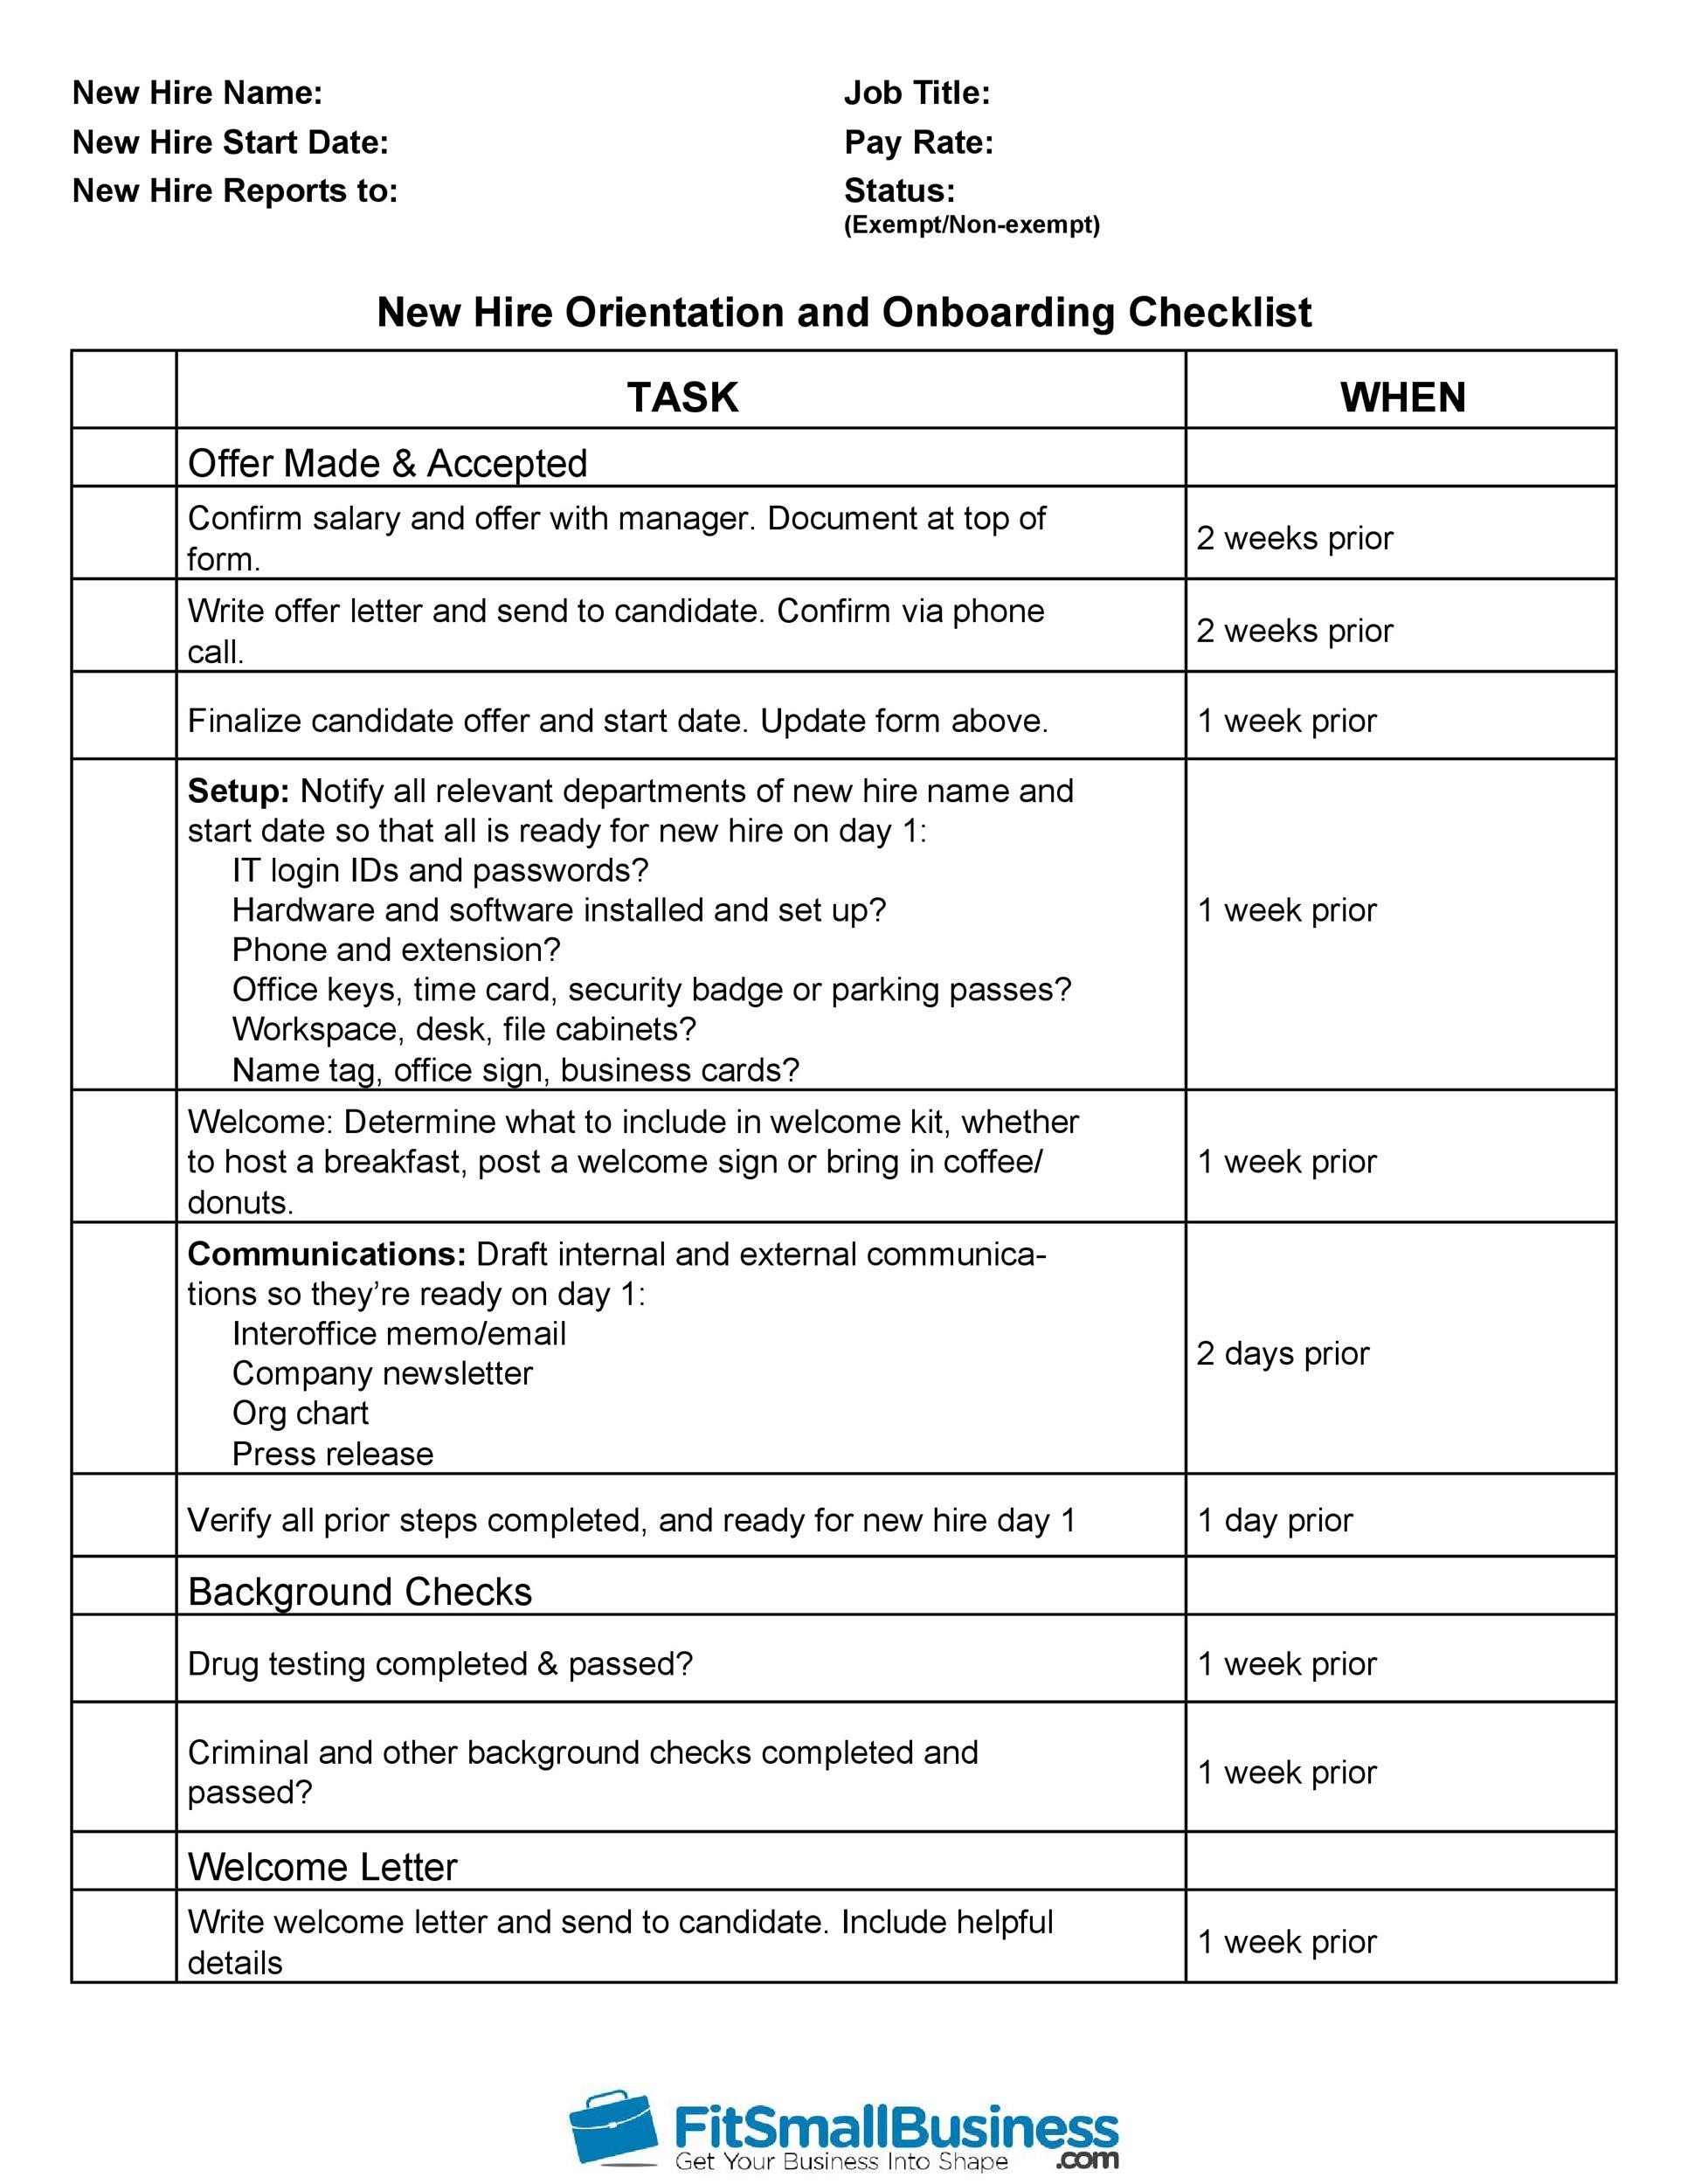 Free new hire checklist 05